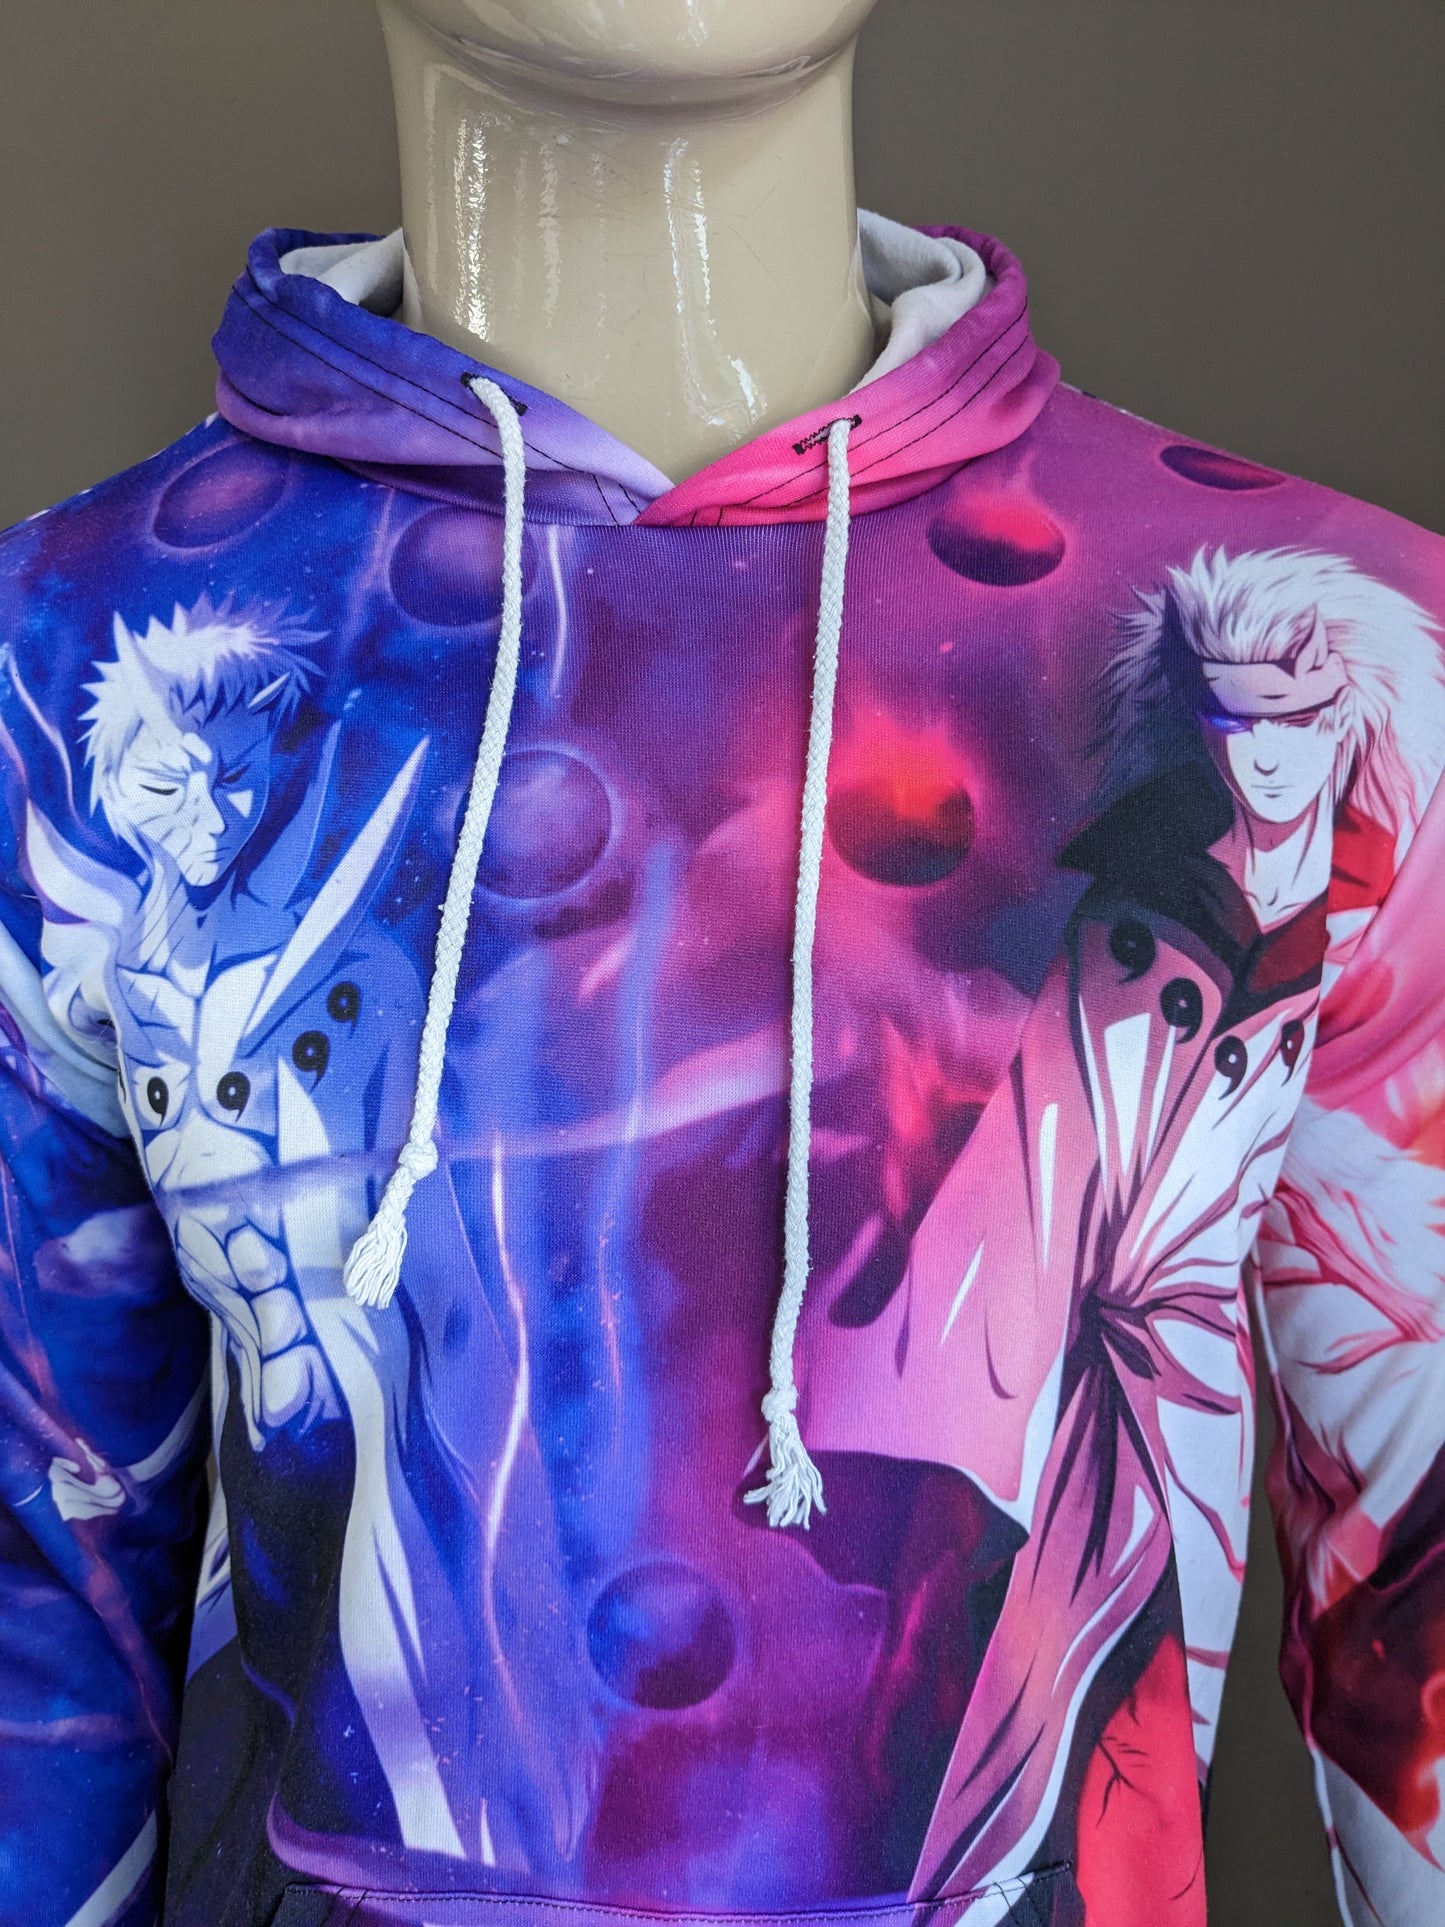 Manga / Anime hoodie. Roze Paars gekleurd. Maat M.